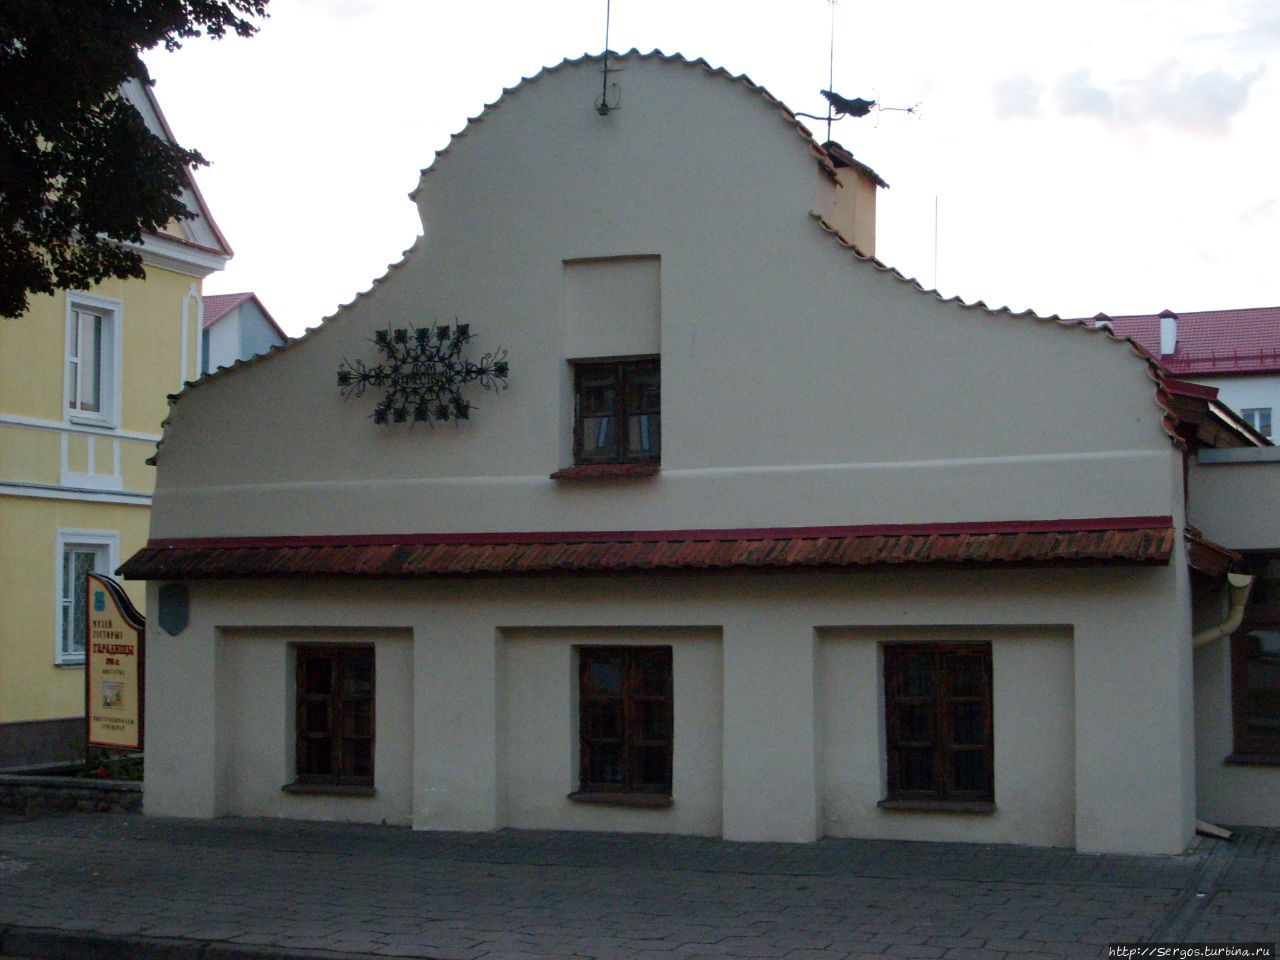 по окна в землю врос басняцкi дом (1767-73гг.) Беларусь